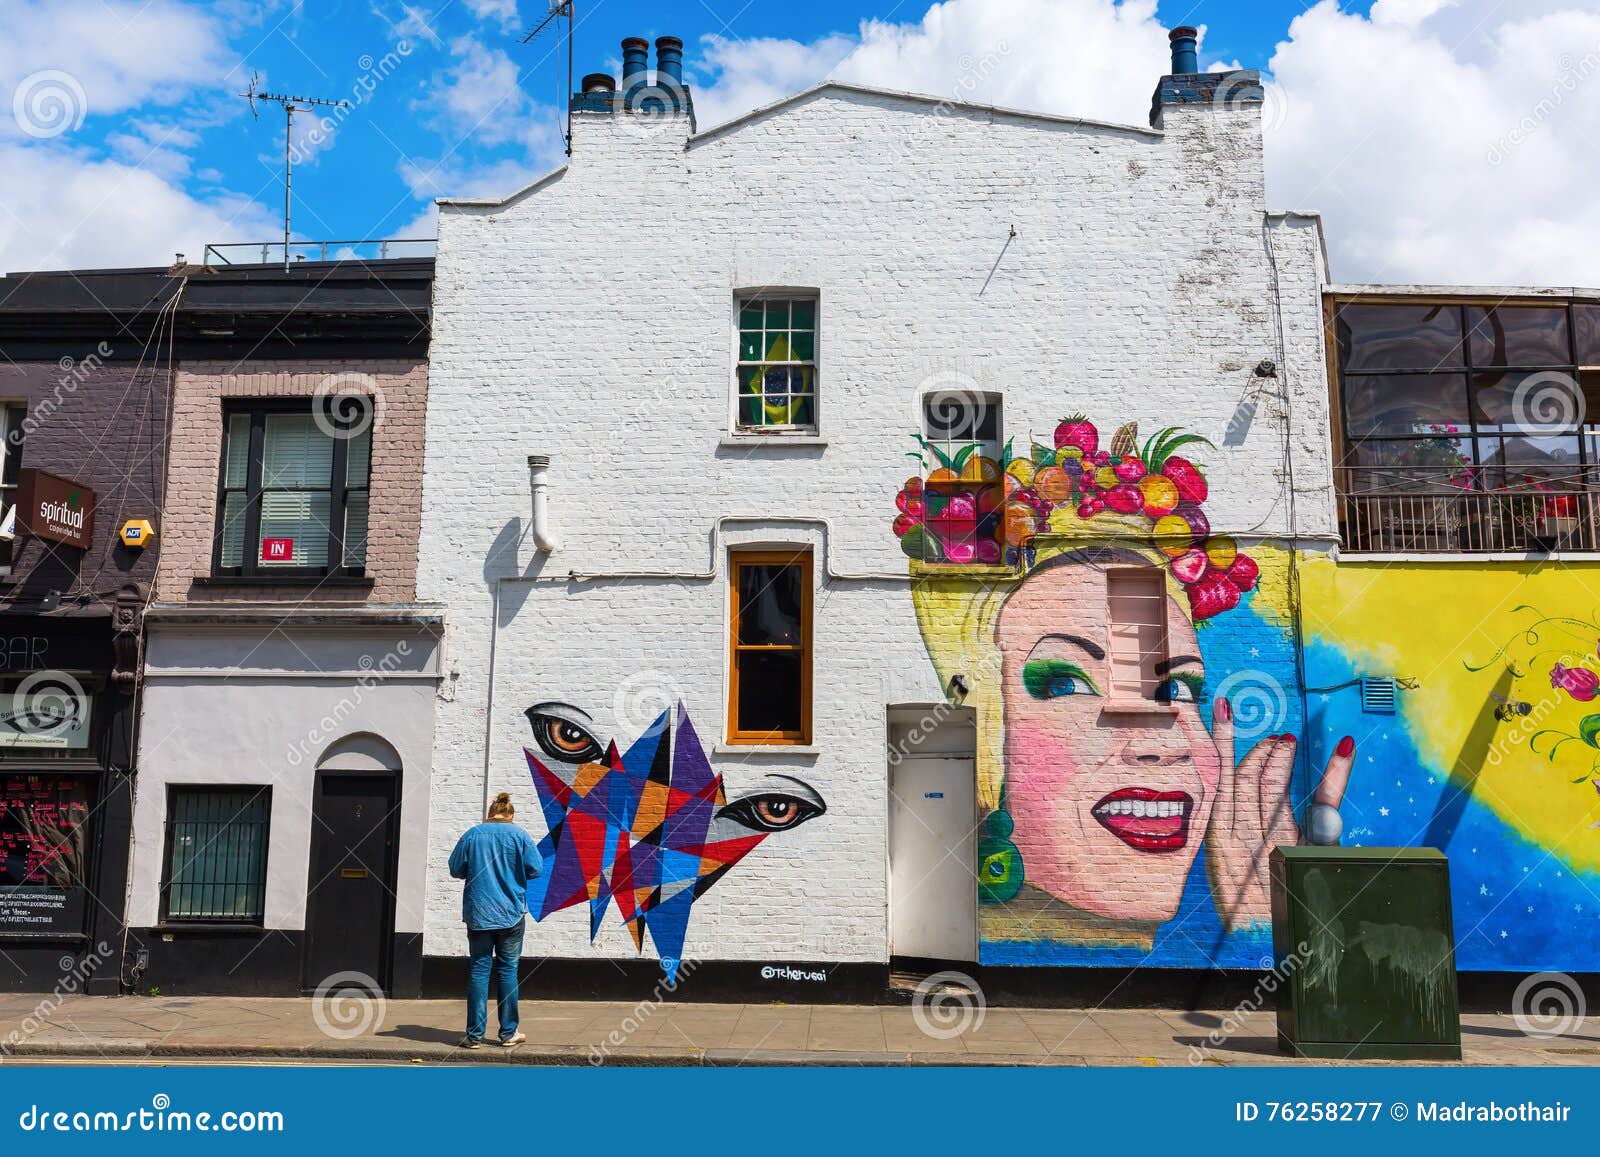 Mural pared ciudad dibujo de Londres